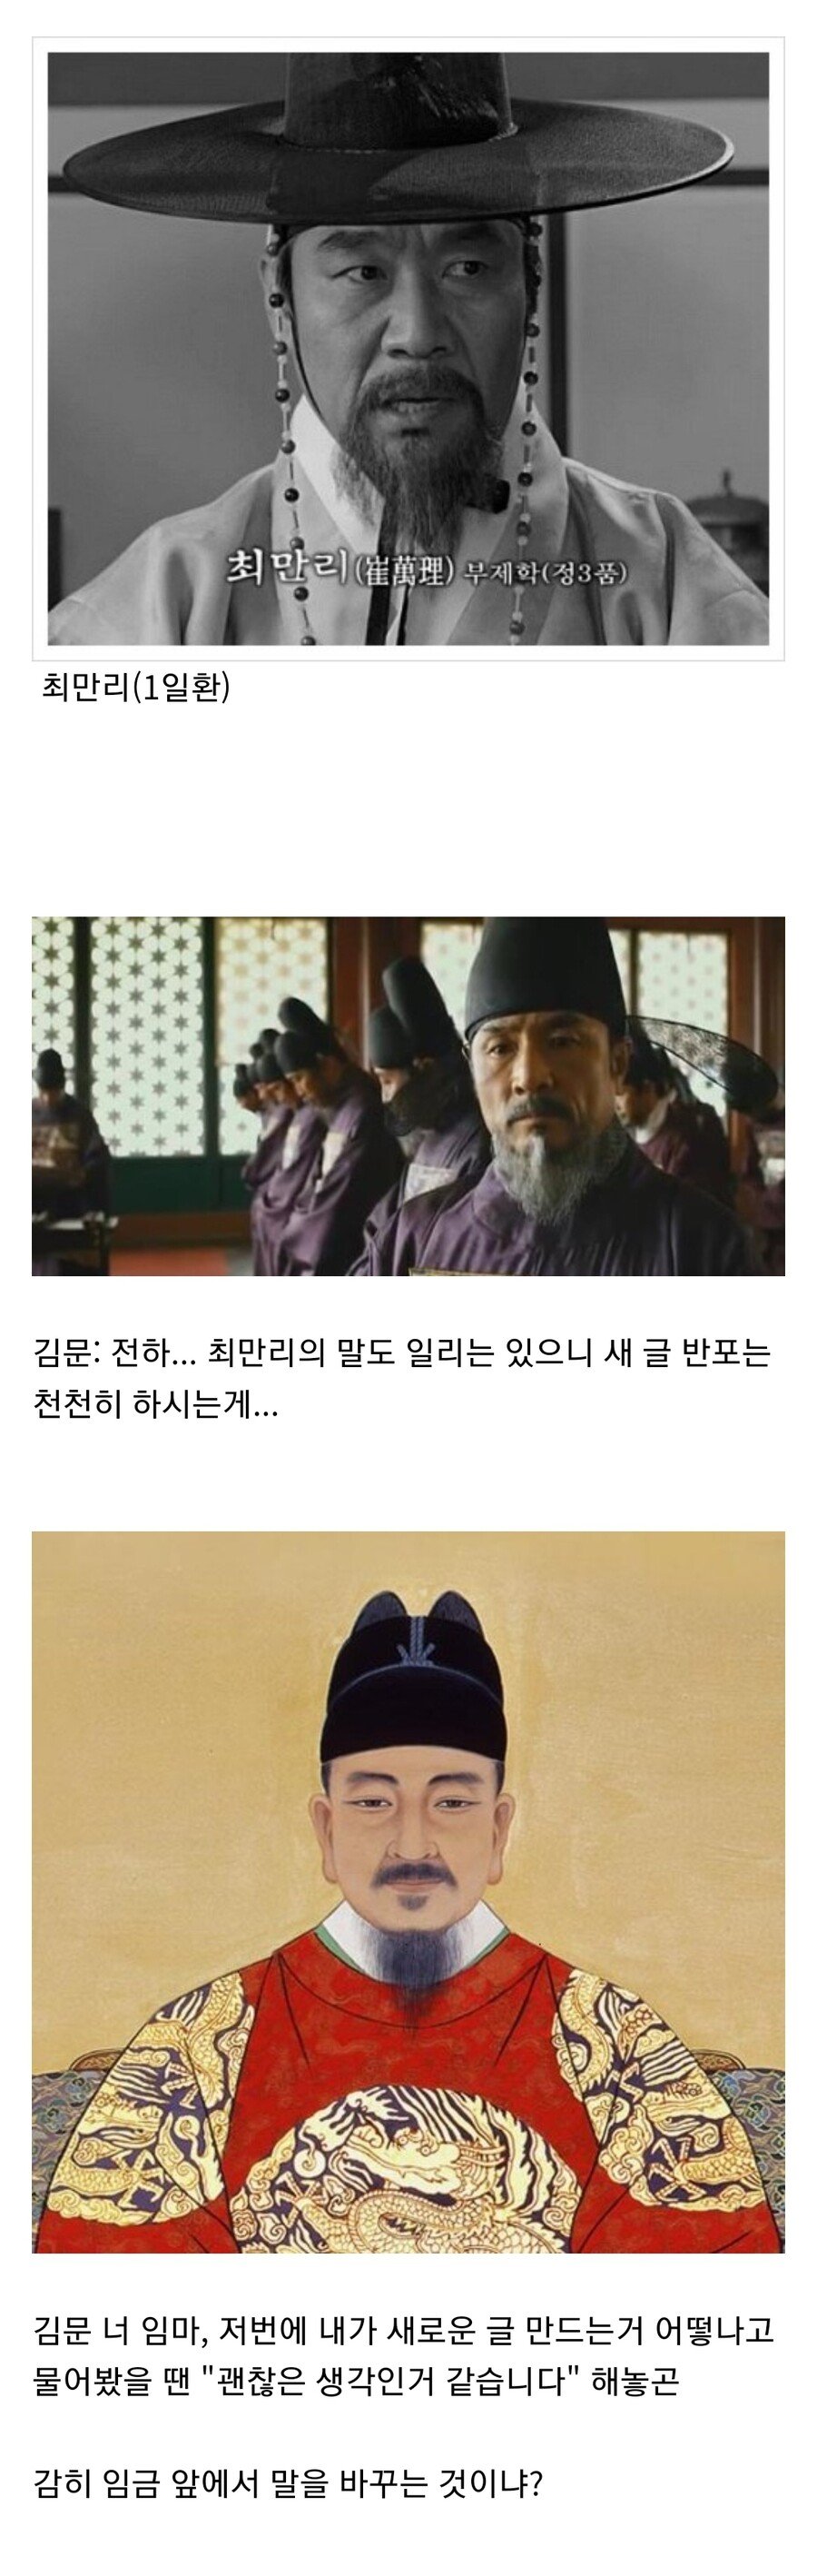 세종대왕의 훈민정음 창제 일화.jpg